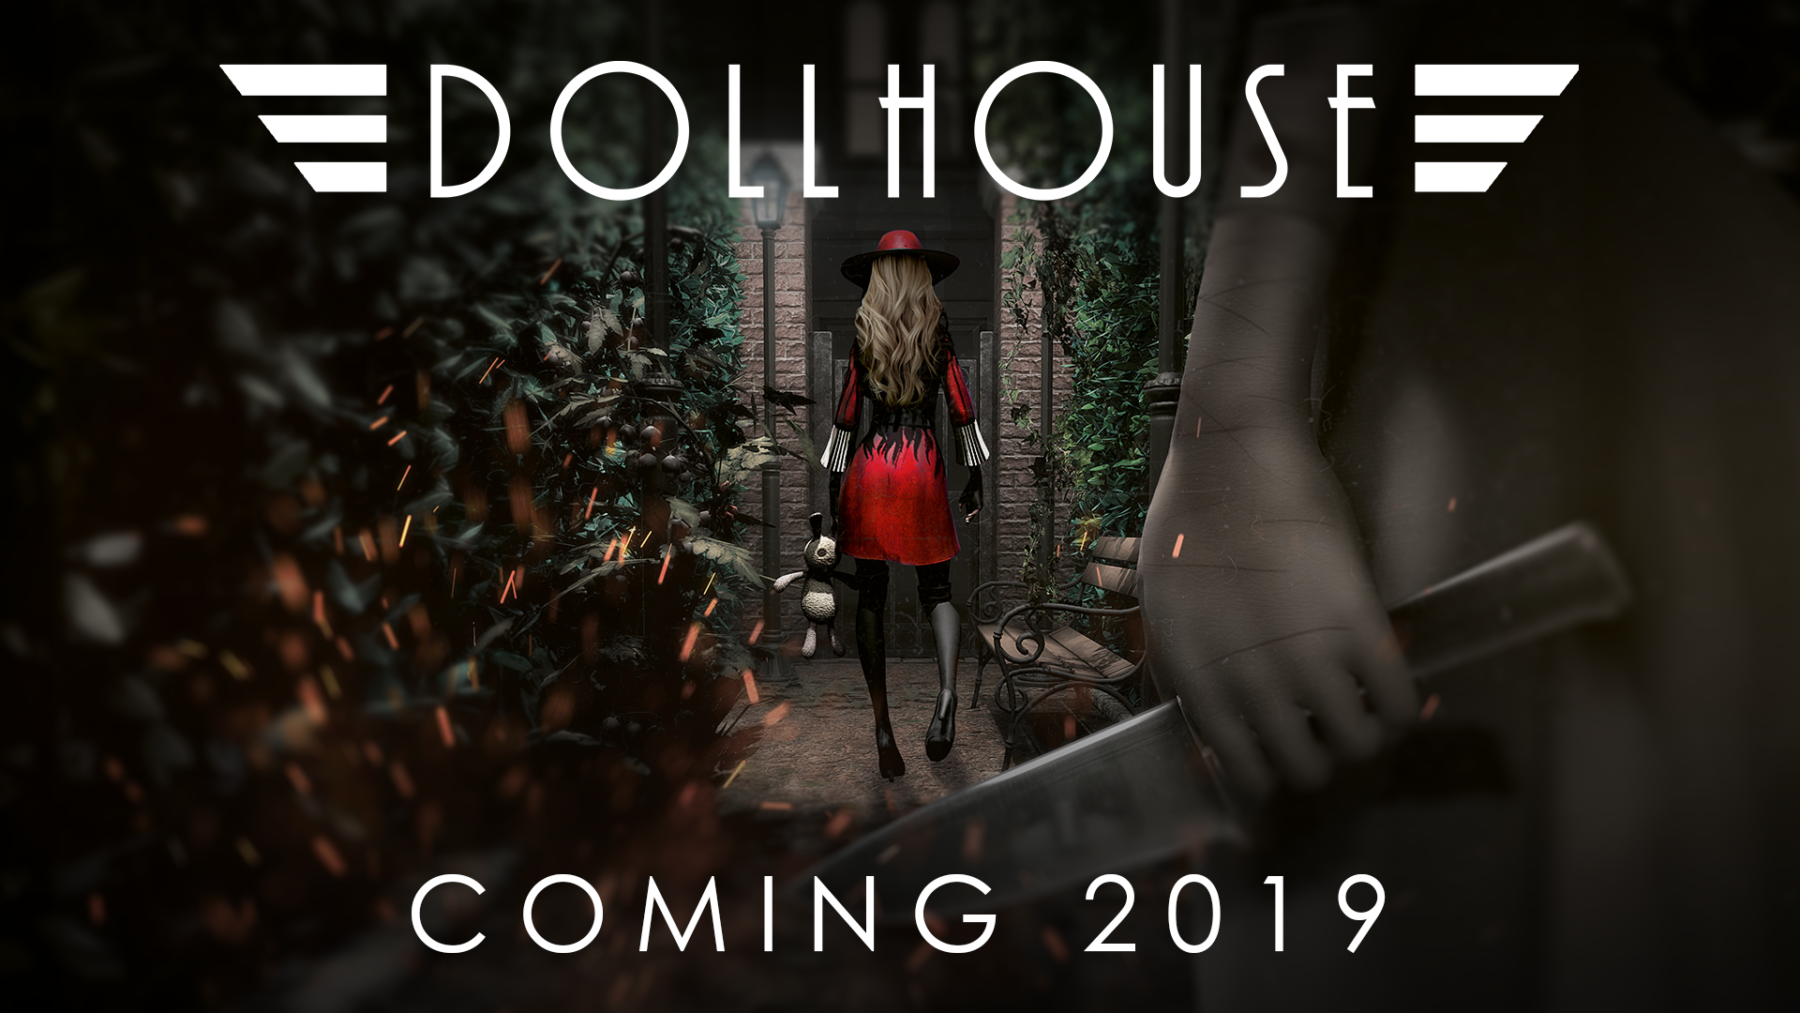 Horror psicológico Dollhouse obtiene un nuevo tráiler y fecha de lanzamiento